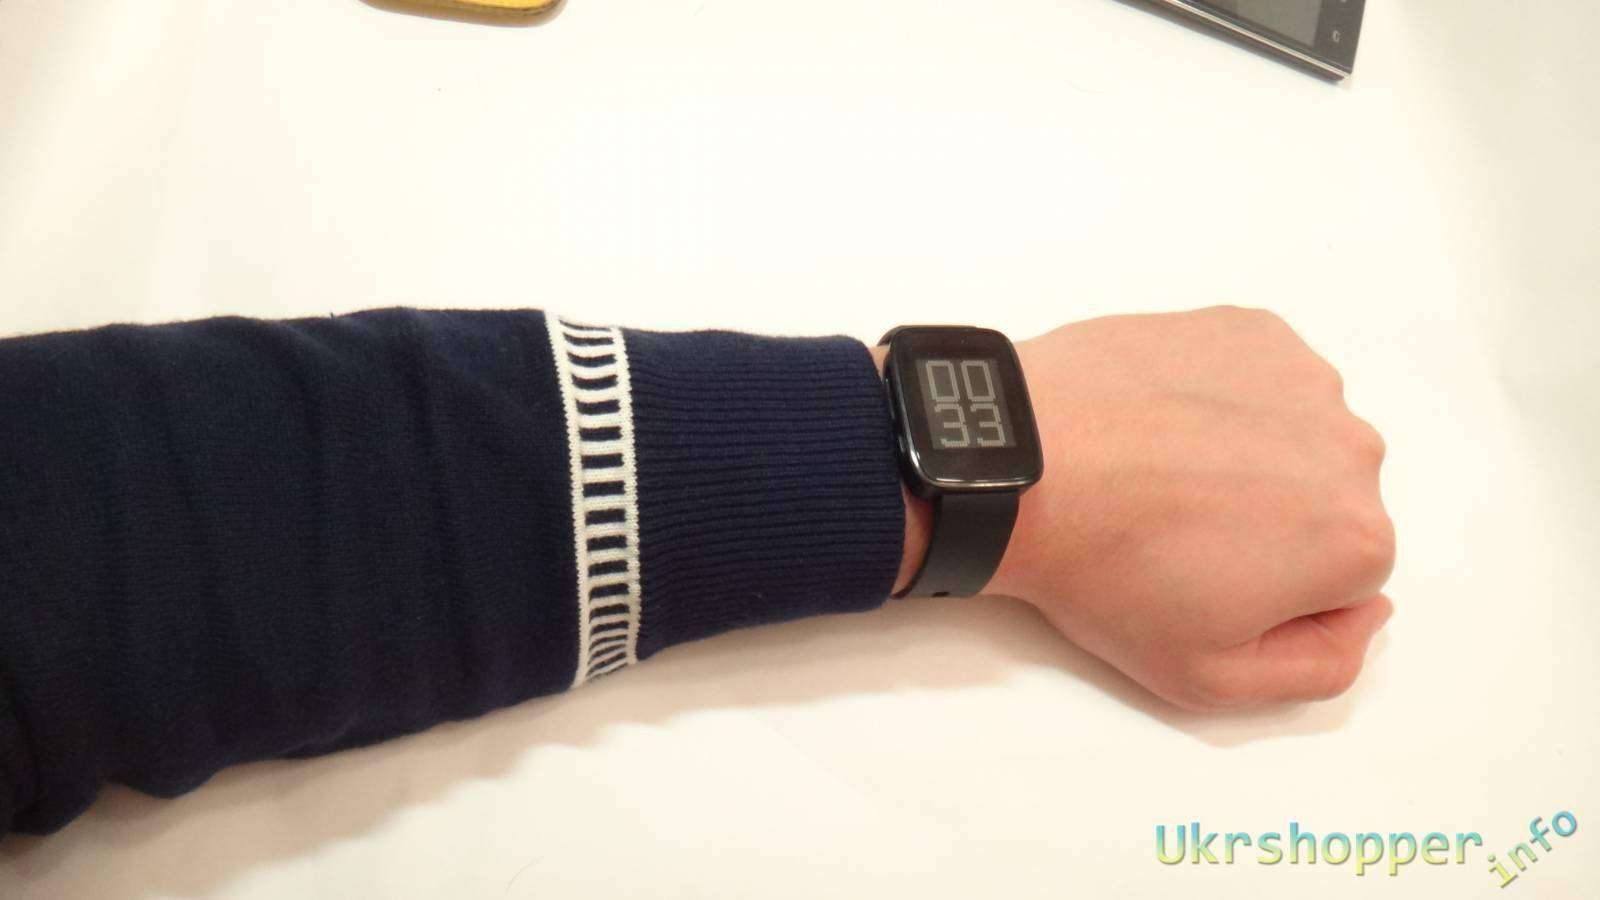 GearBest: Weloop Tommy - умные часы - все что вы хотели знать, но боялись спросить огромный обзор!